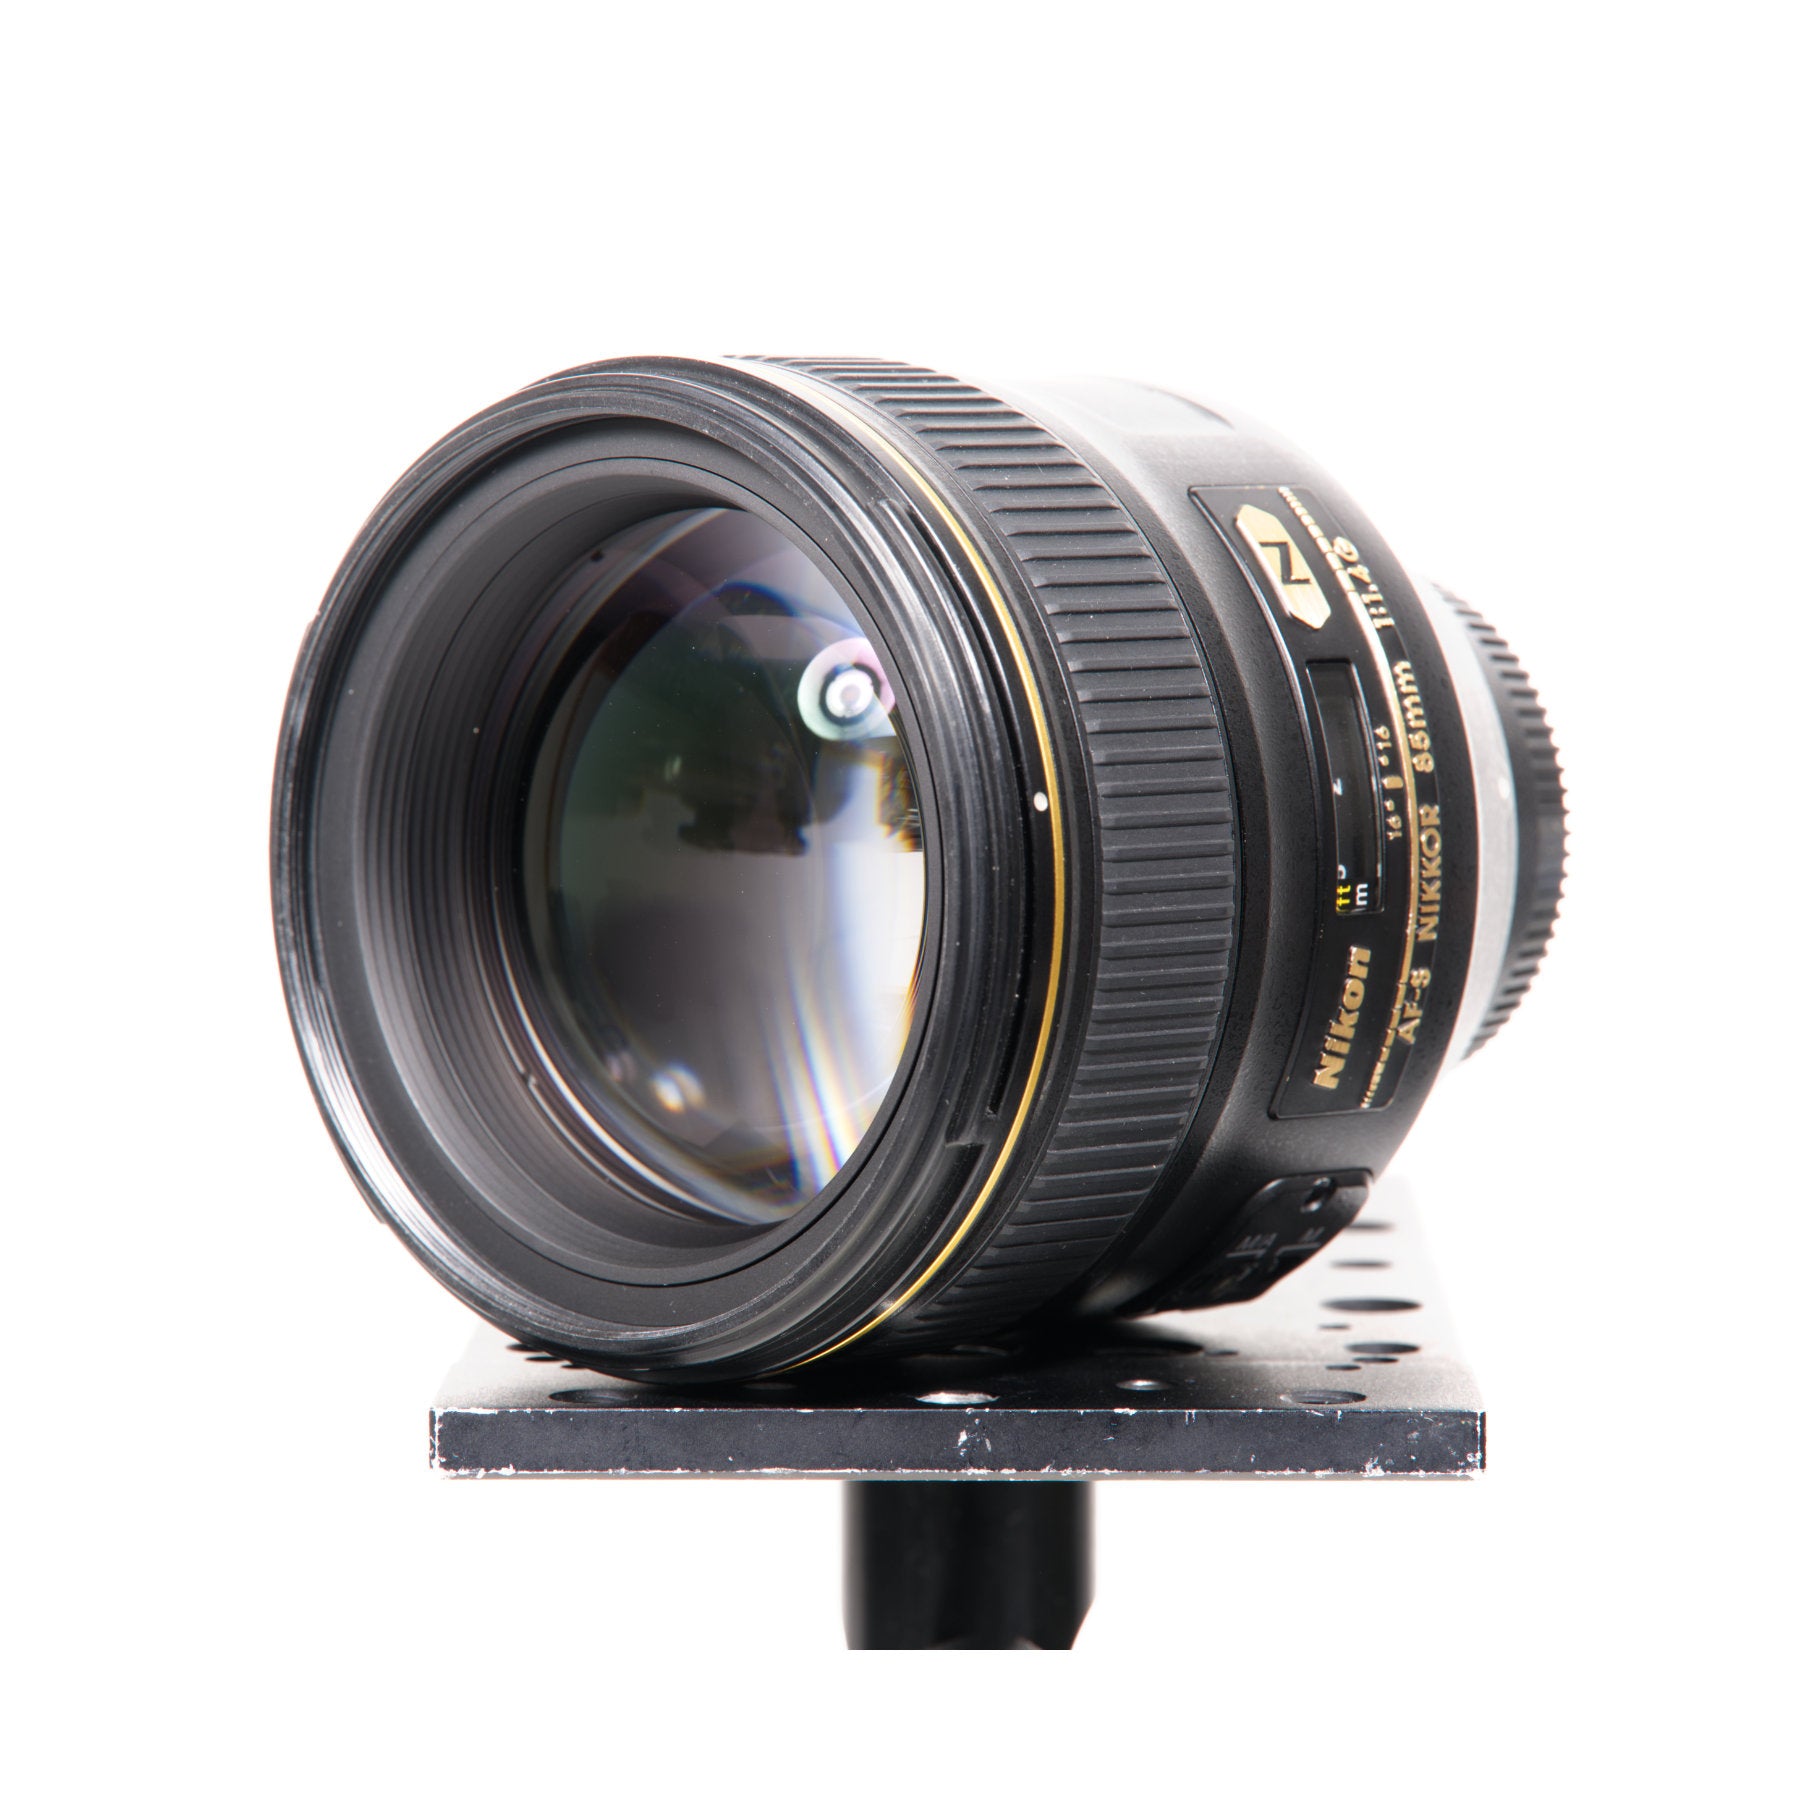 Buy Nikon AF-S NIKKOR 85mm f/1.4G Lens at Topic Store